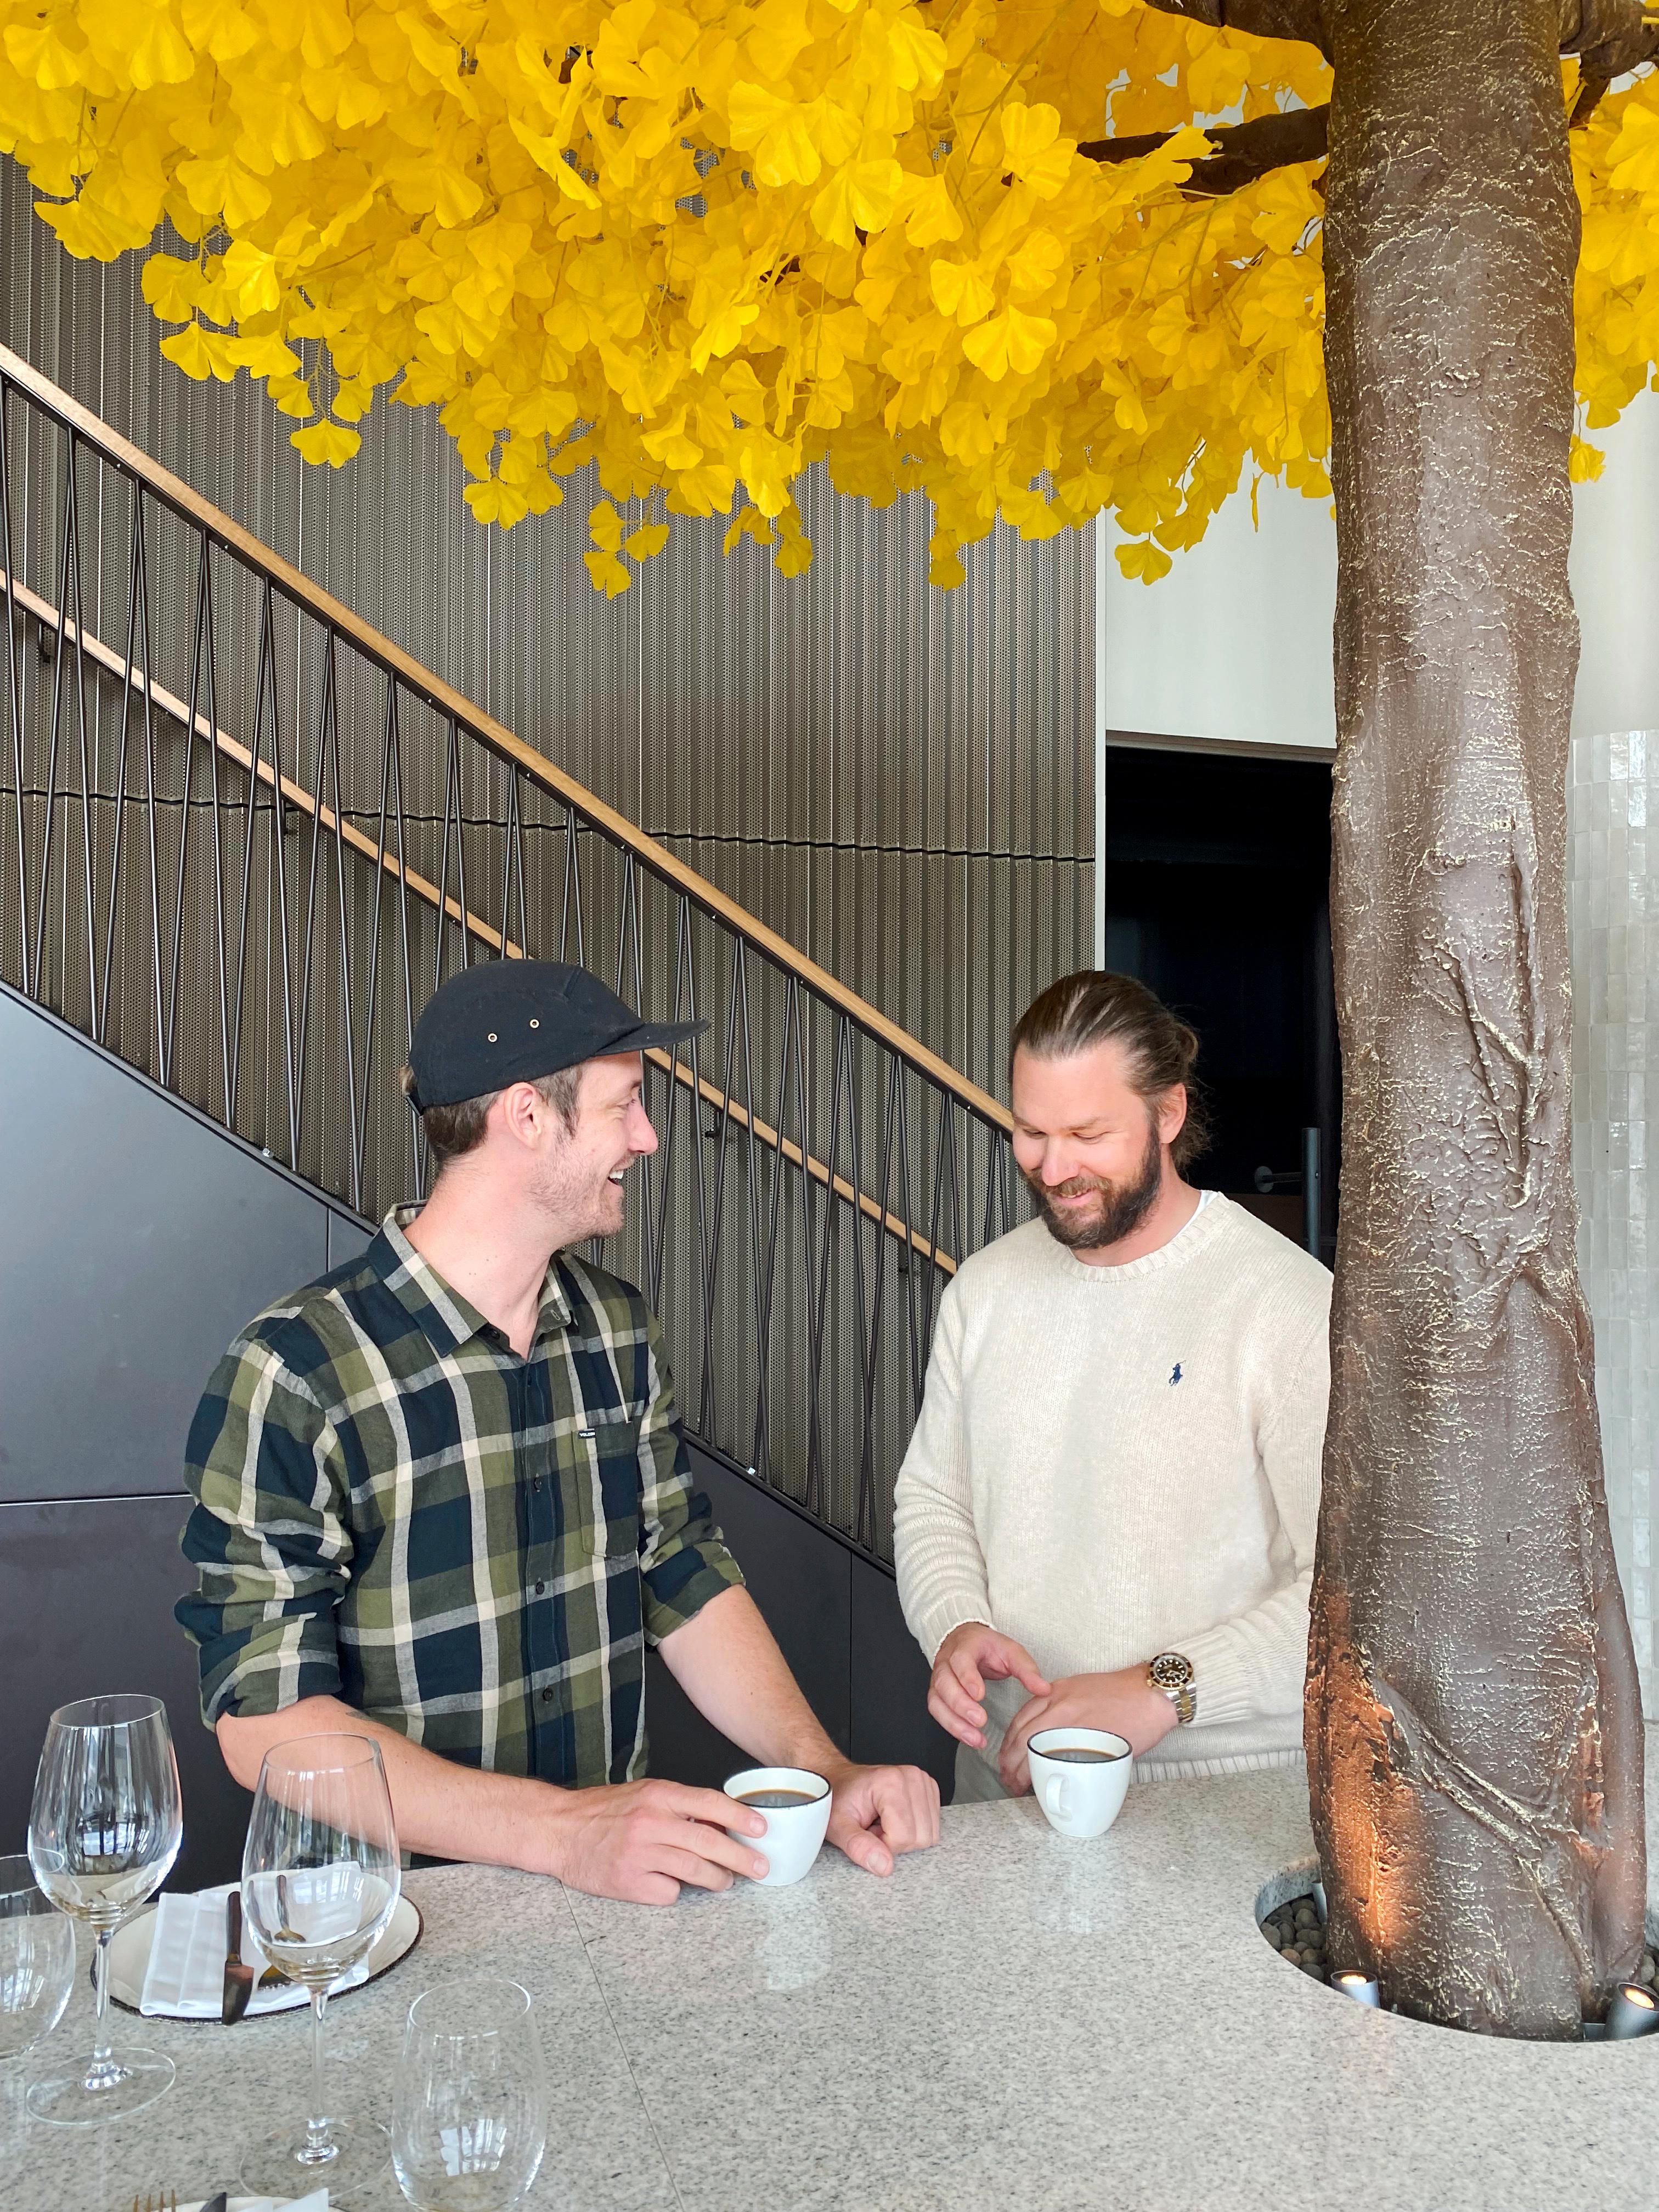 SAMARBEID: Mens Svensson pønsker ut ideer, utfører Moffat dem. Her på Svenssons restaurant Avalon i Oslo.